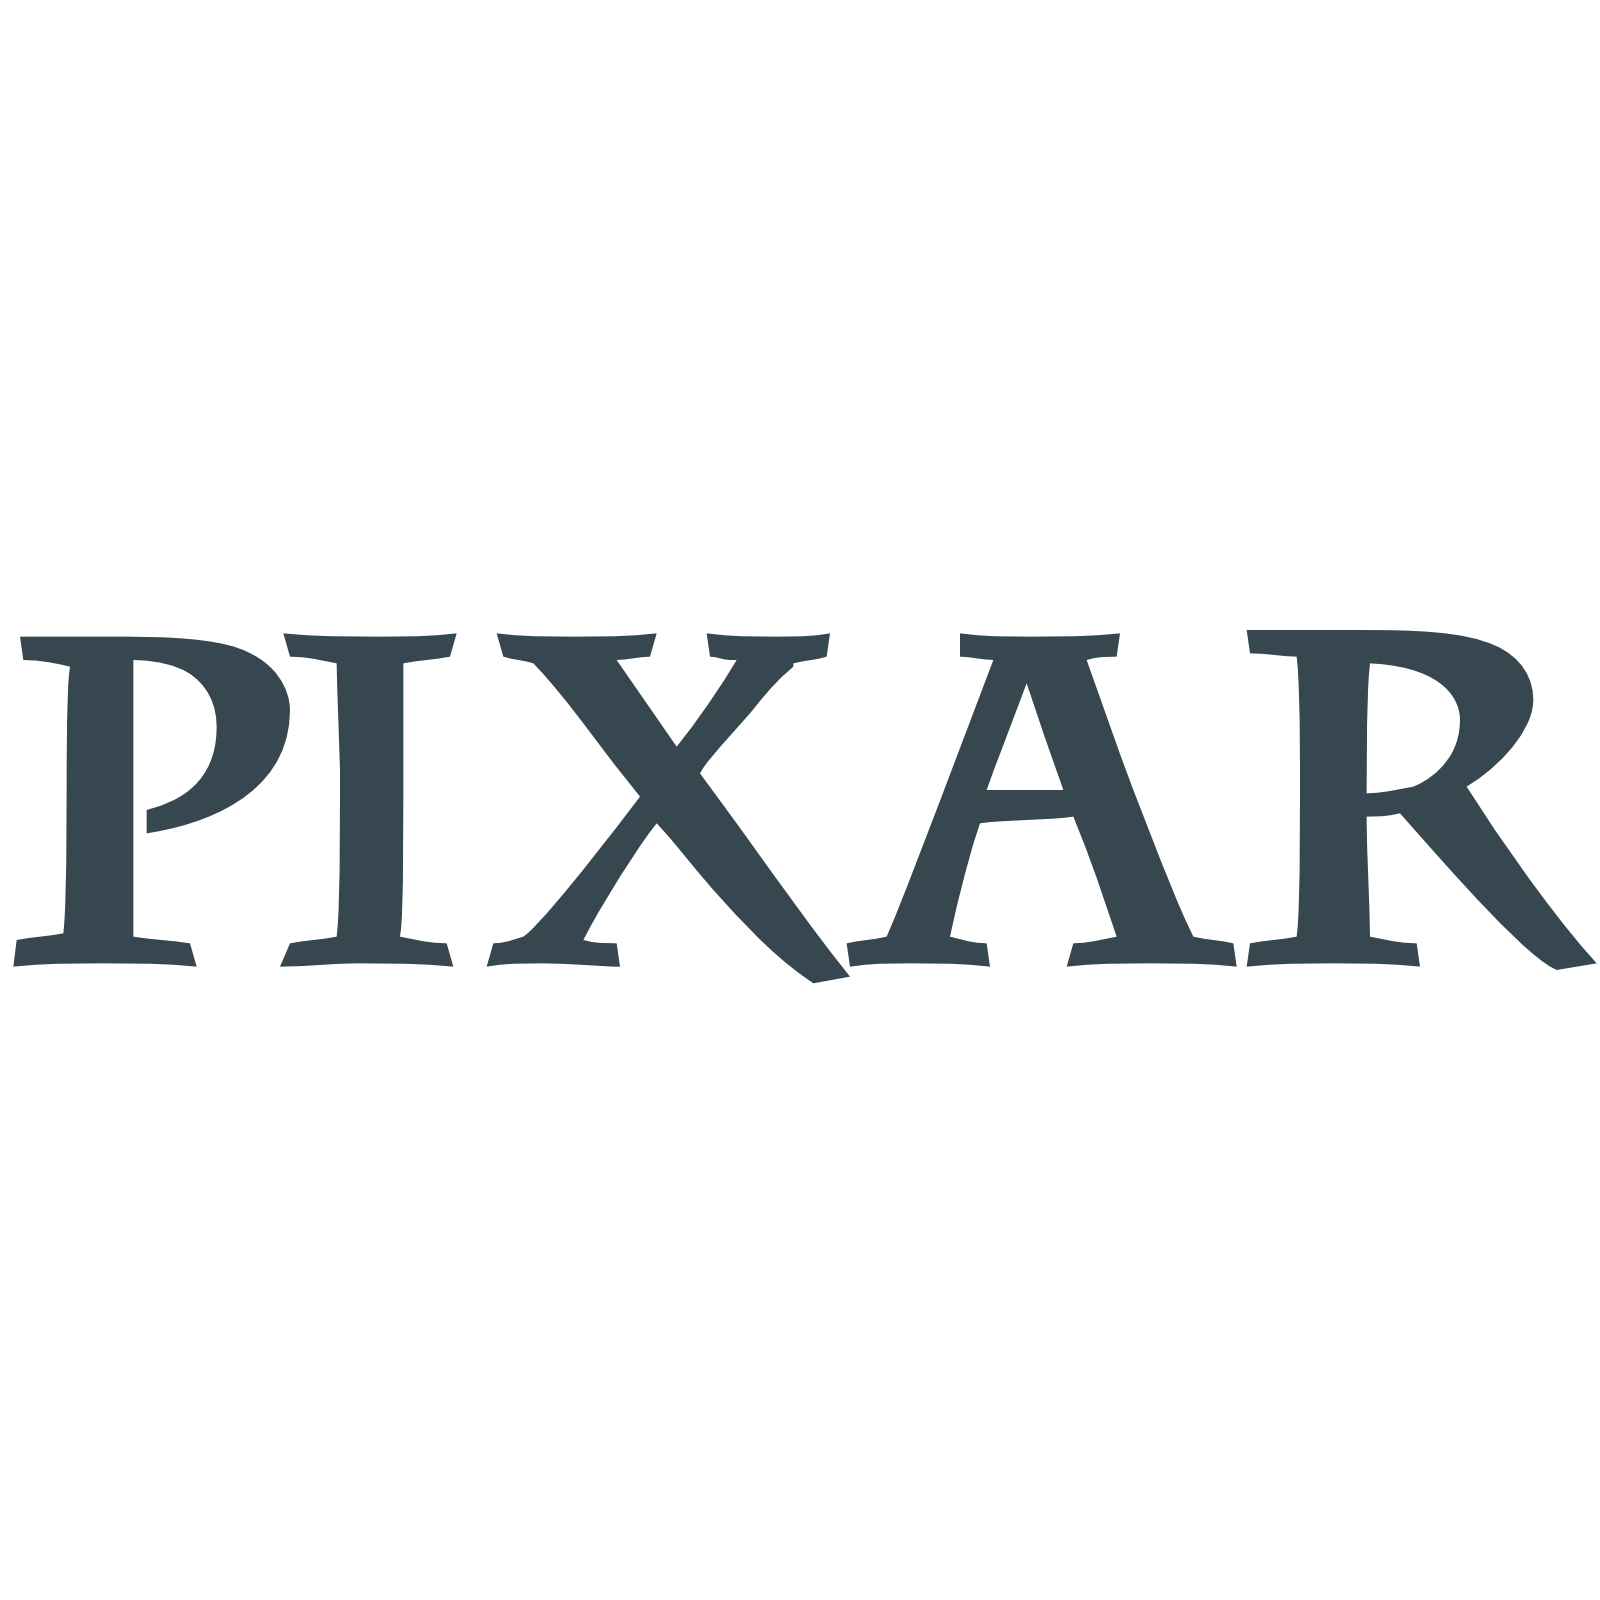 Пиксар. Значок Пиксар. Компания Пиксар логотип. Компания пиксар